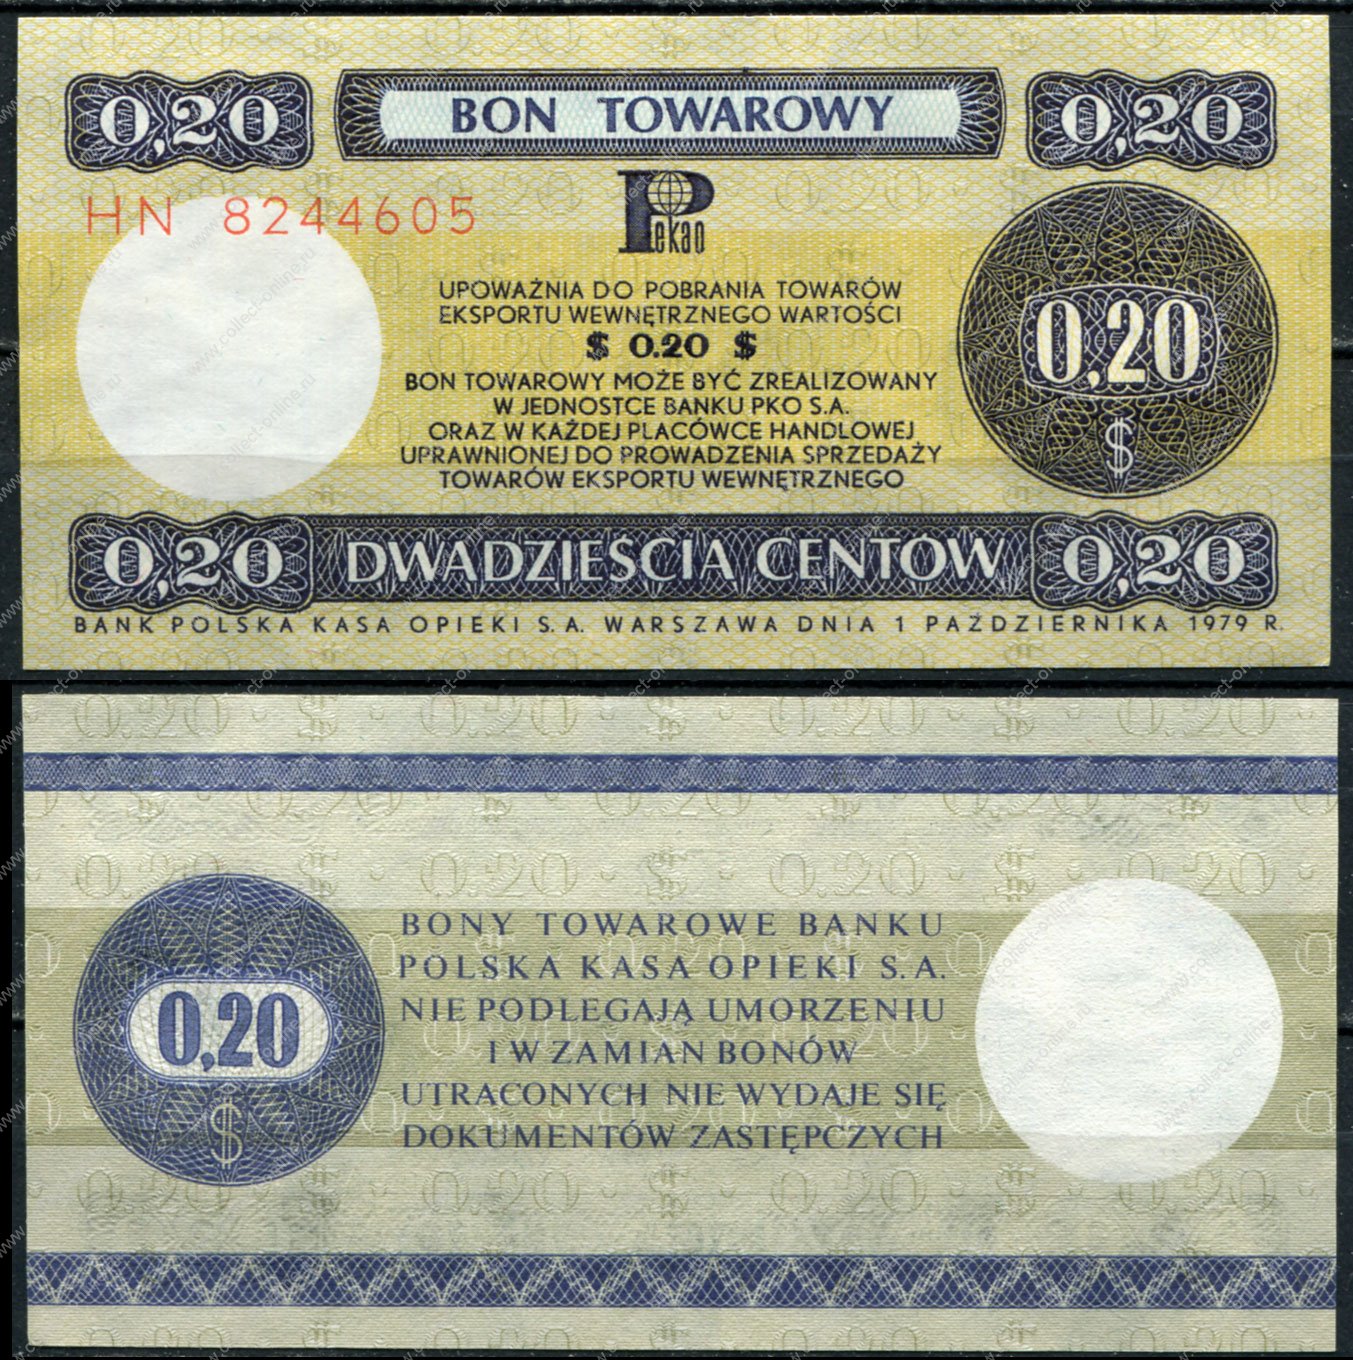 20 бун в рублях. Валютный сертификат. Bon towarowy 5 центов Польша 1969 Pekao.